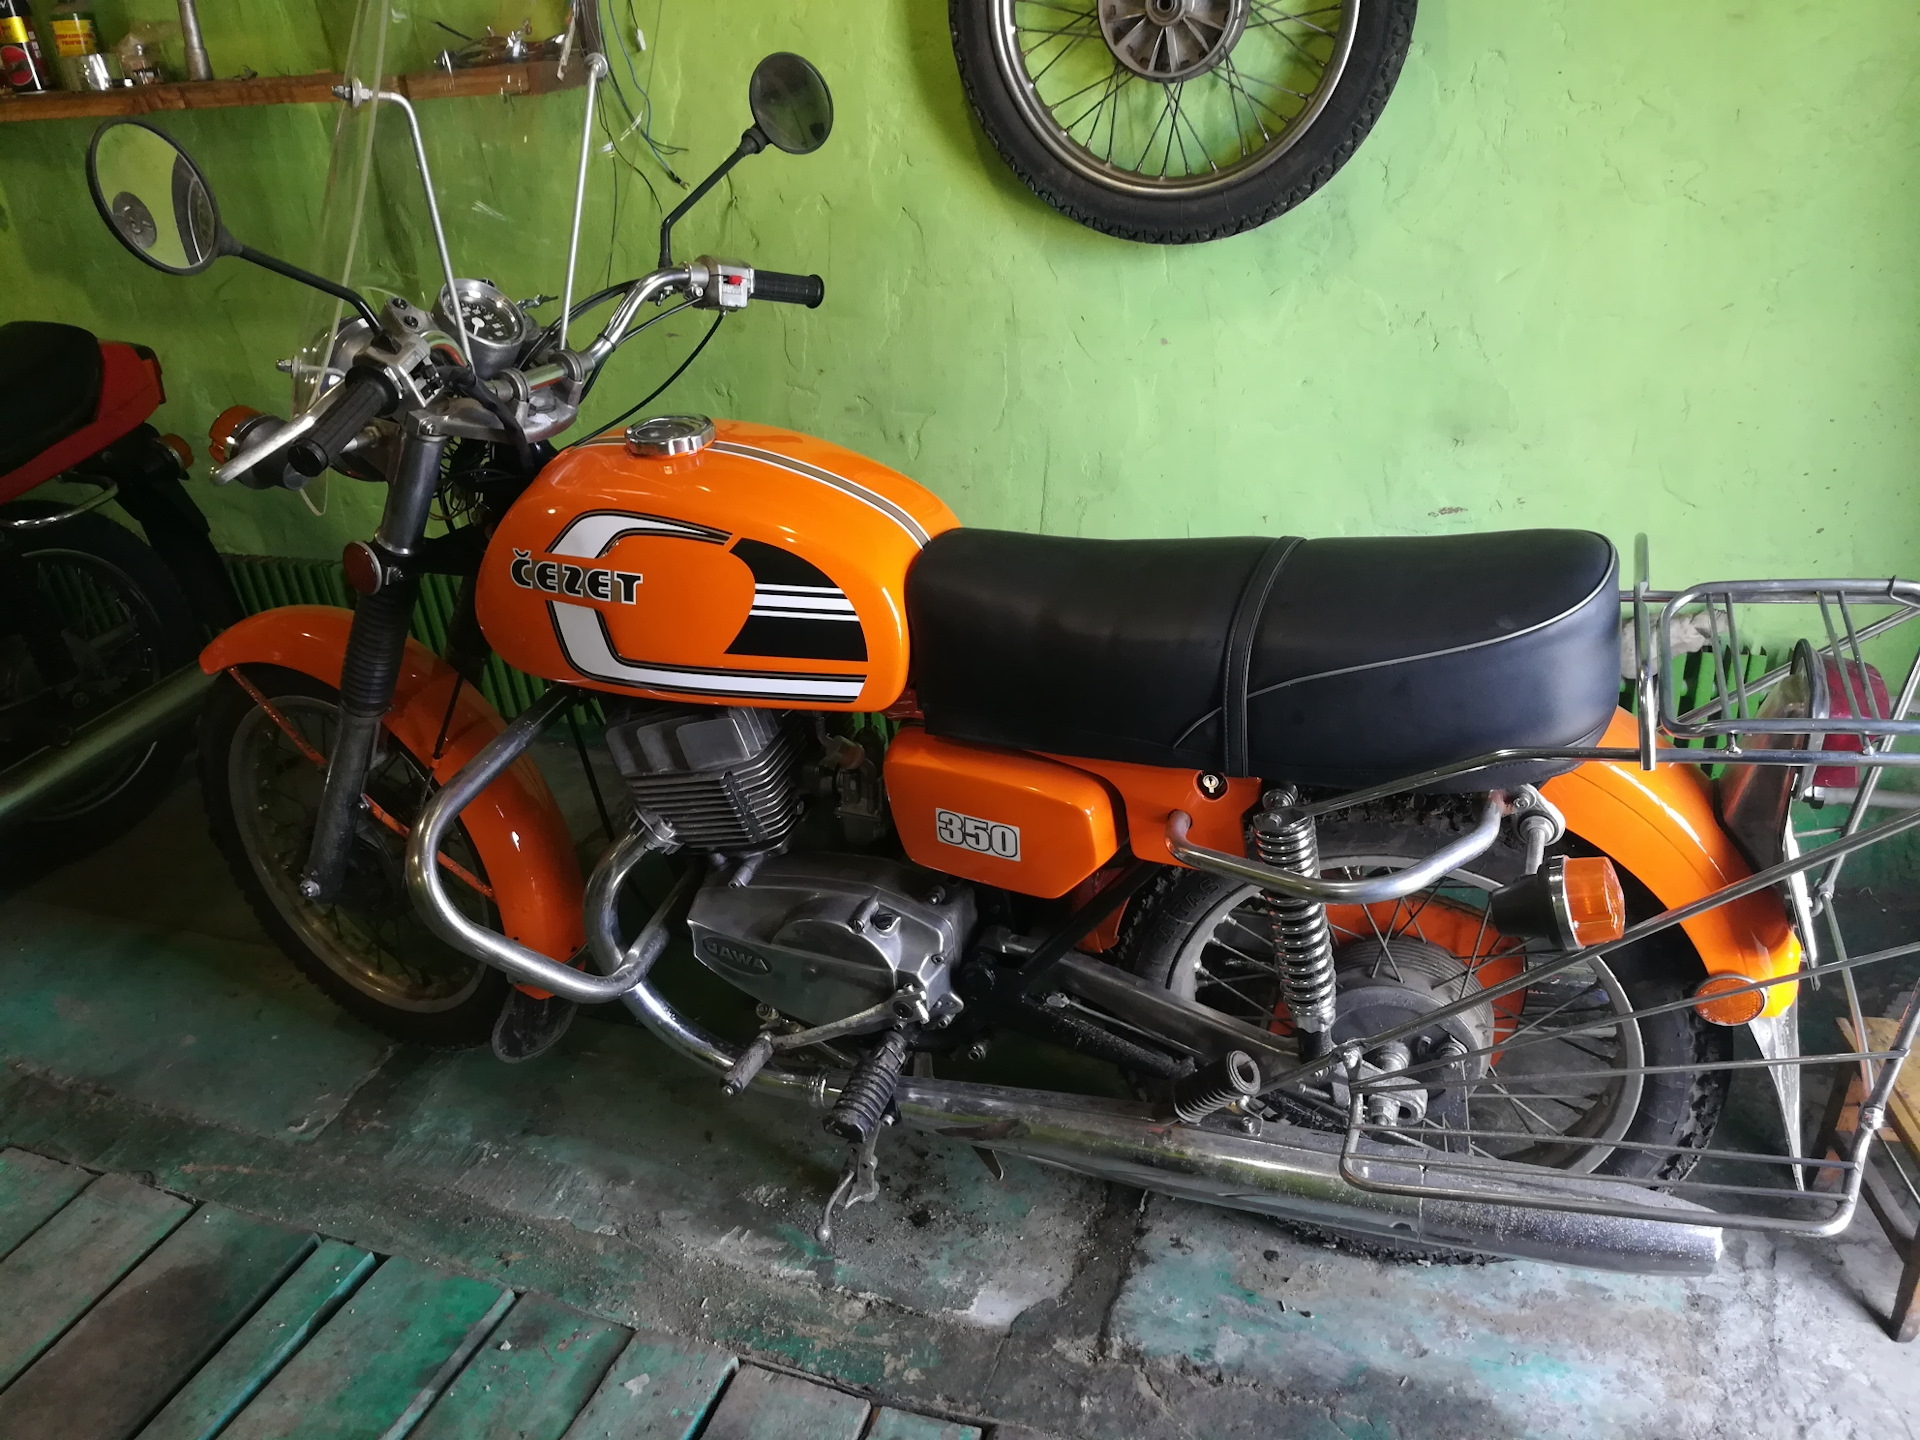 Мотоцикл Ява Чезет 350